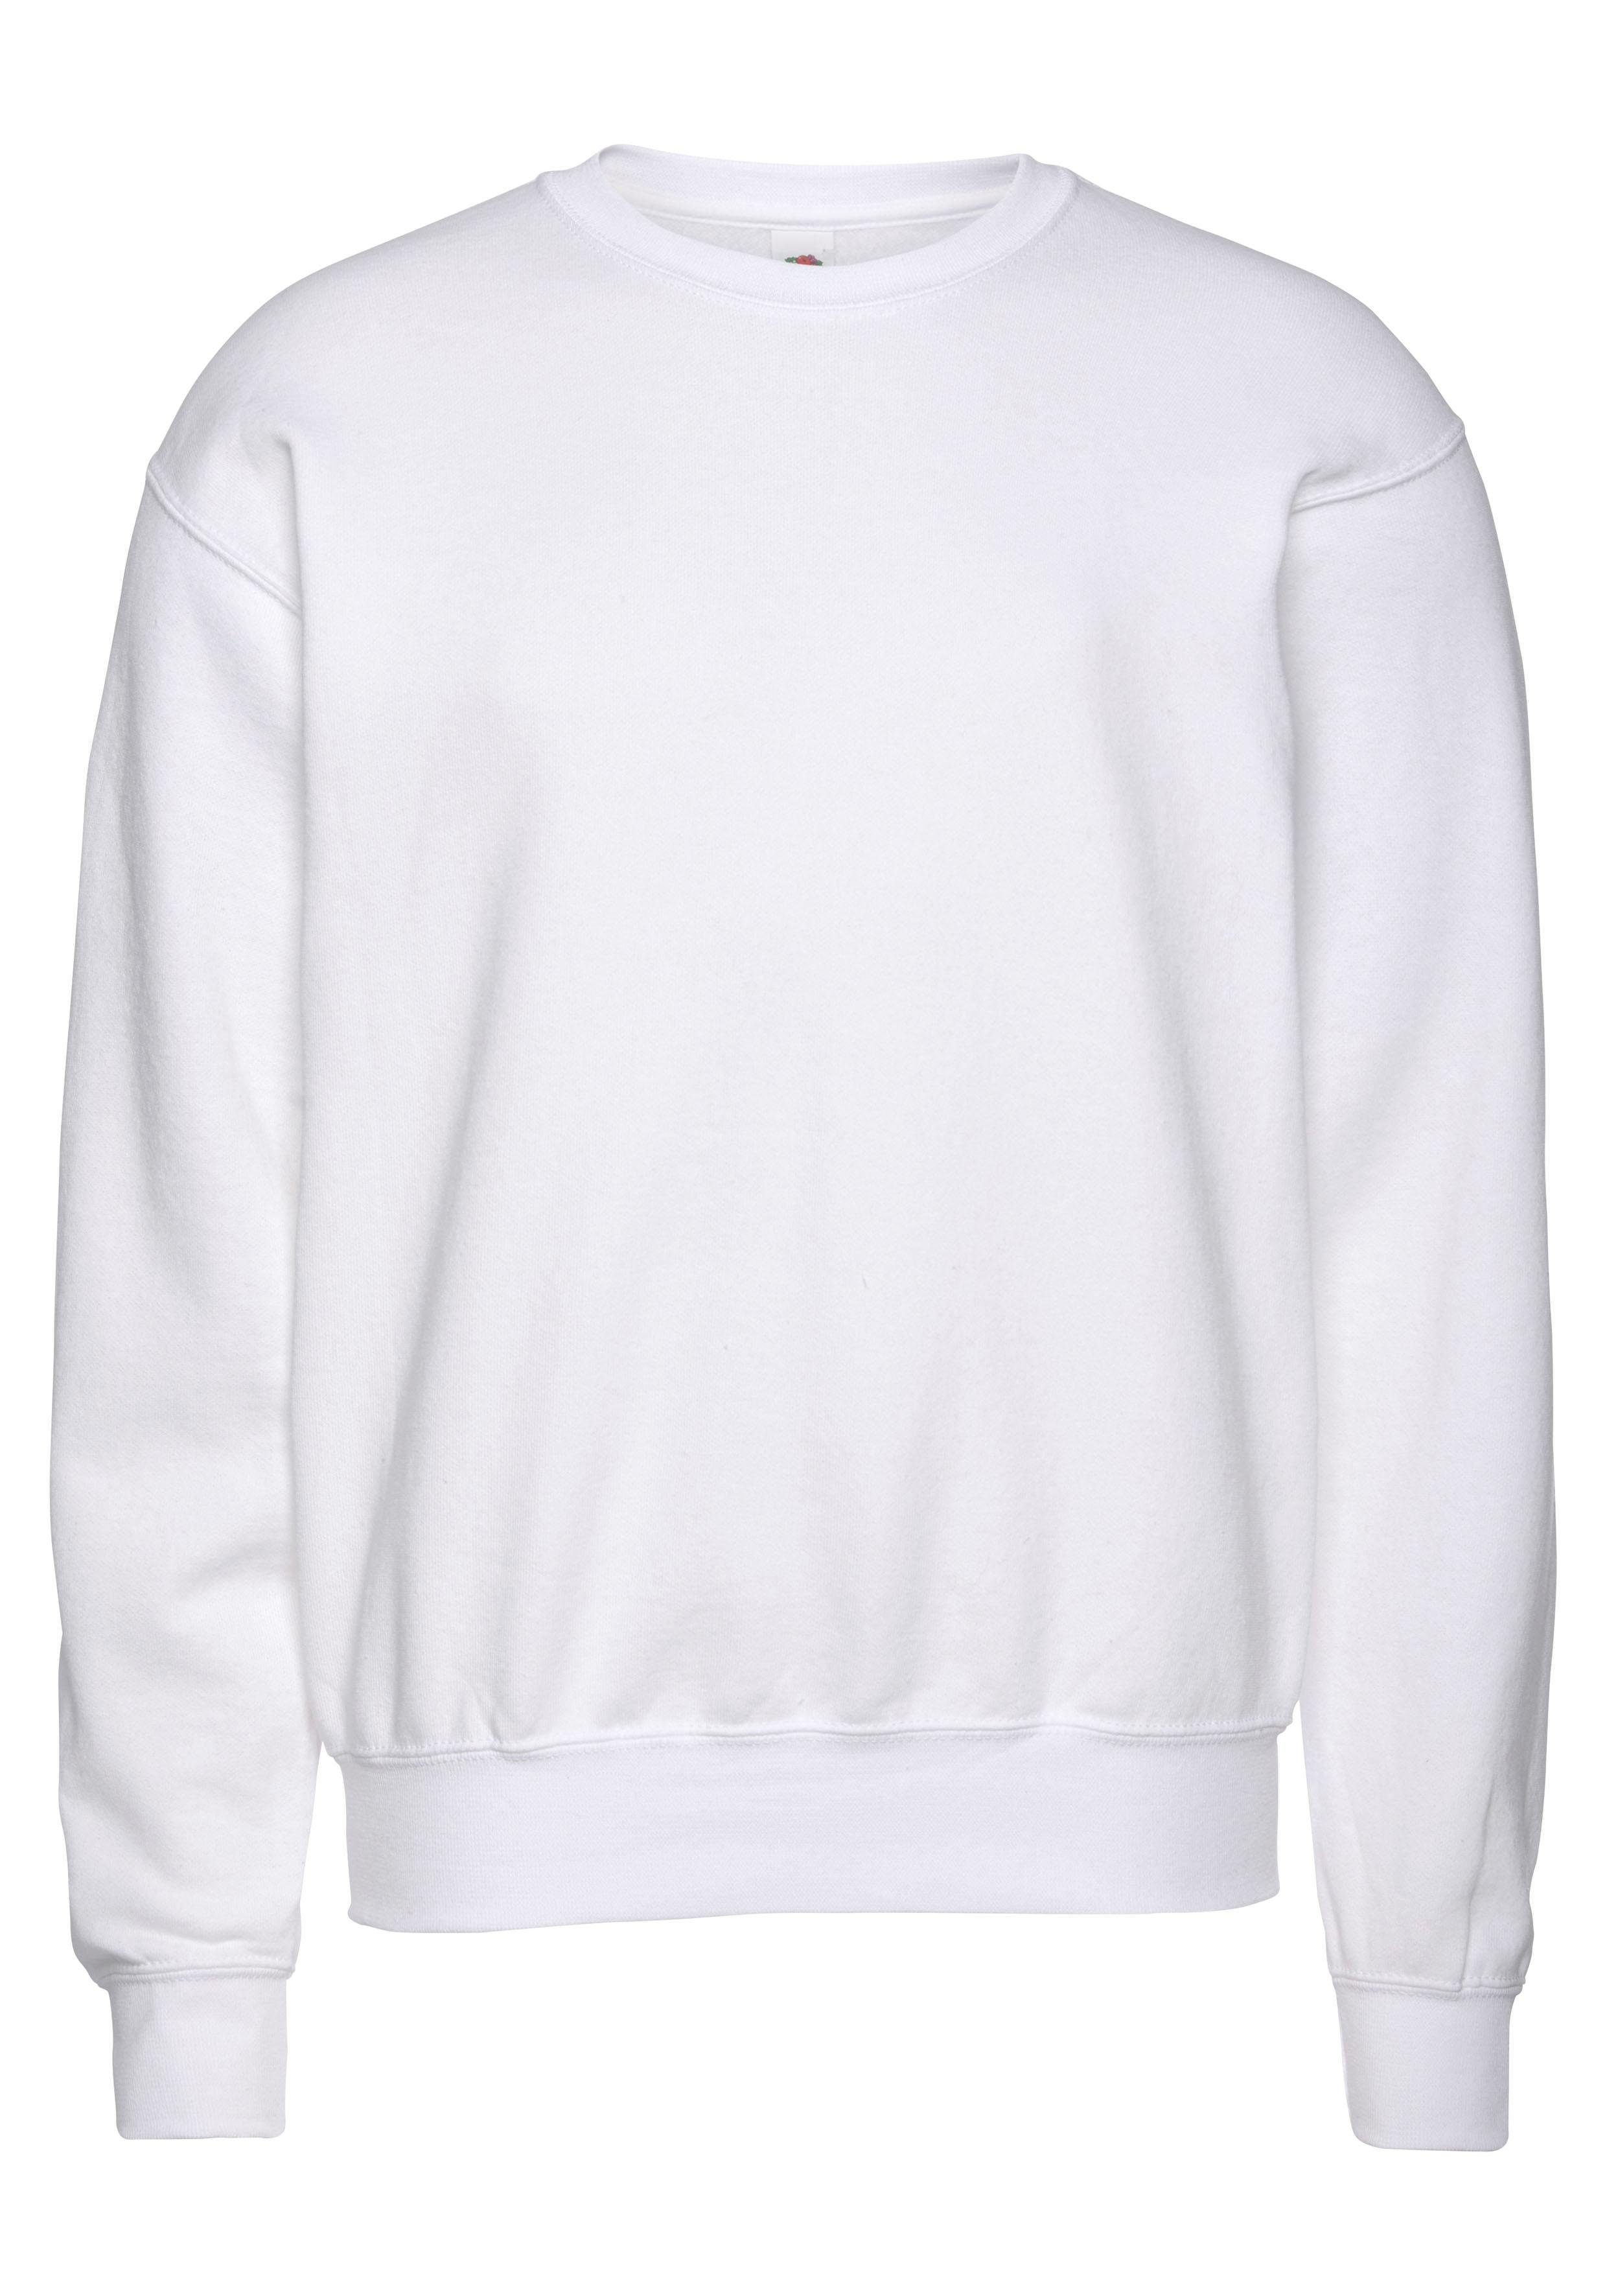 Weißes Sweatshirt online kaufen | OTTO